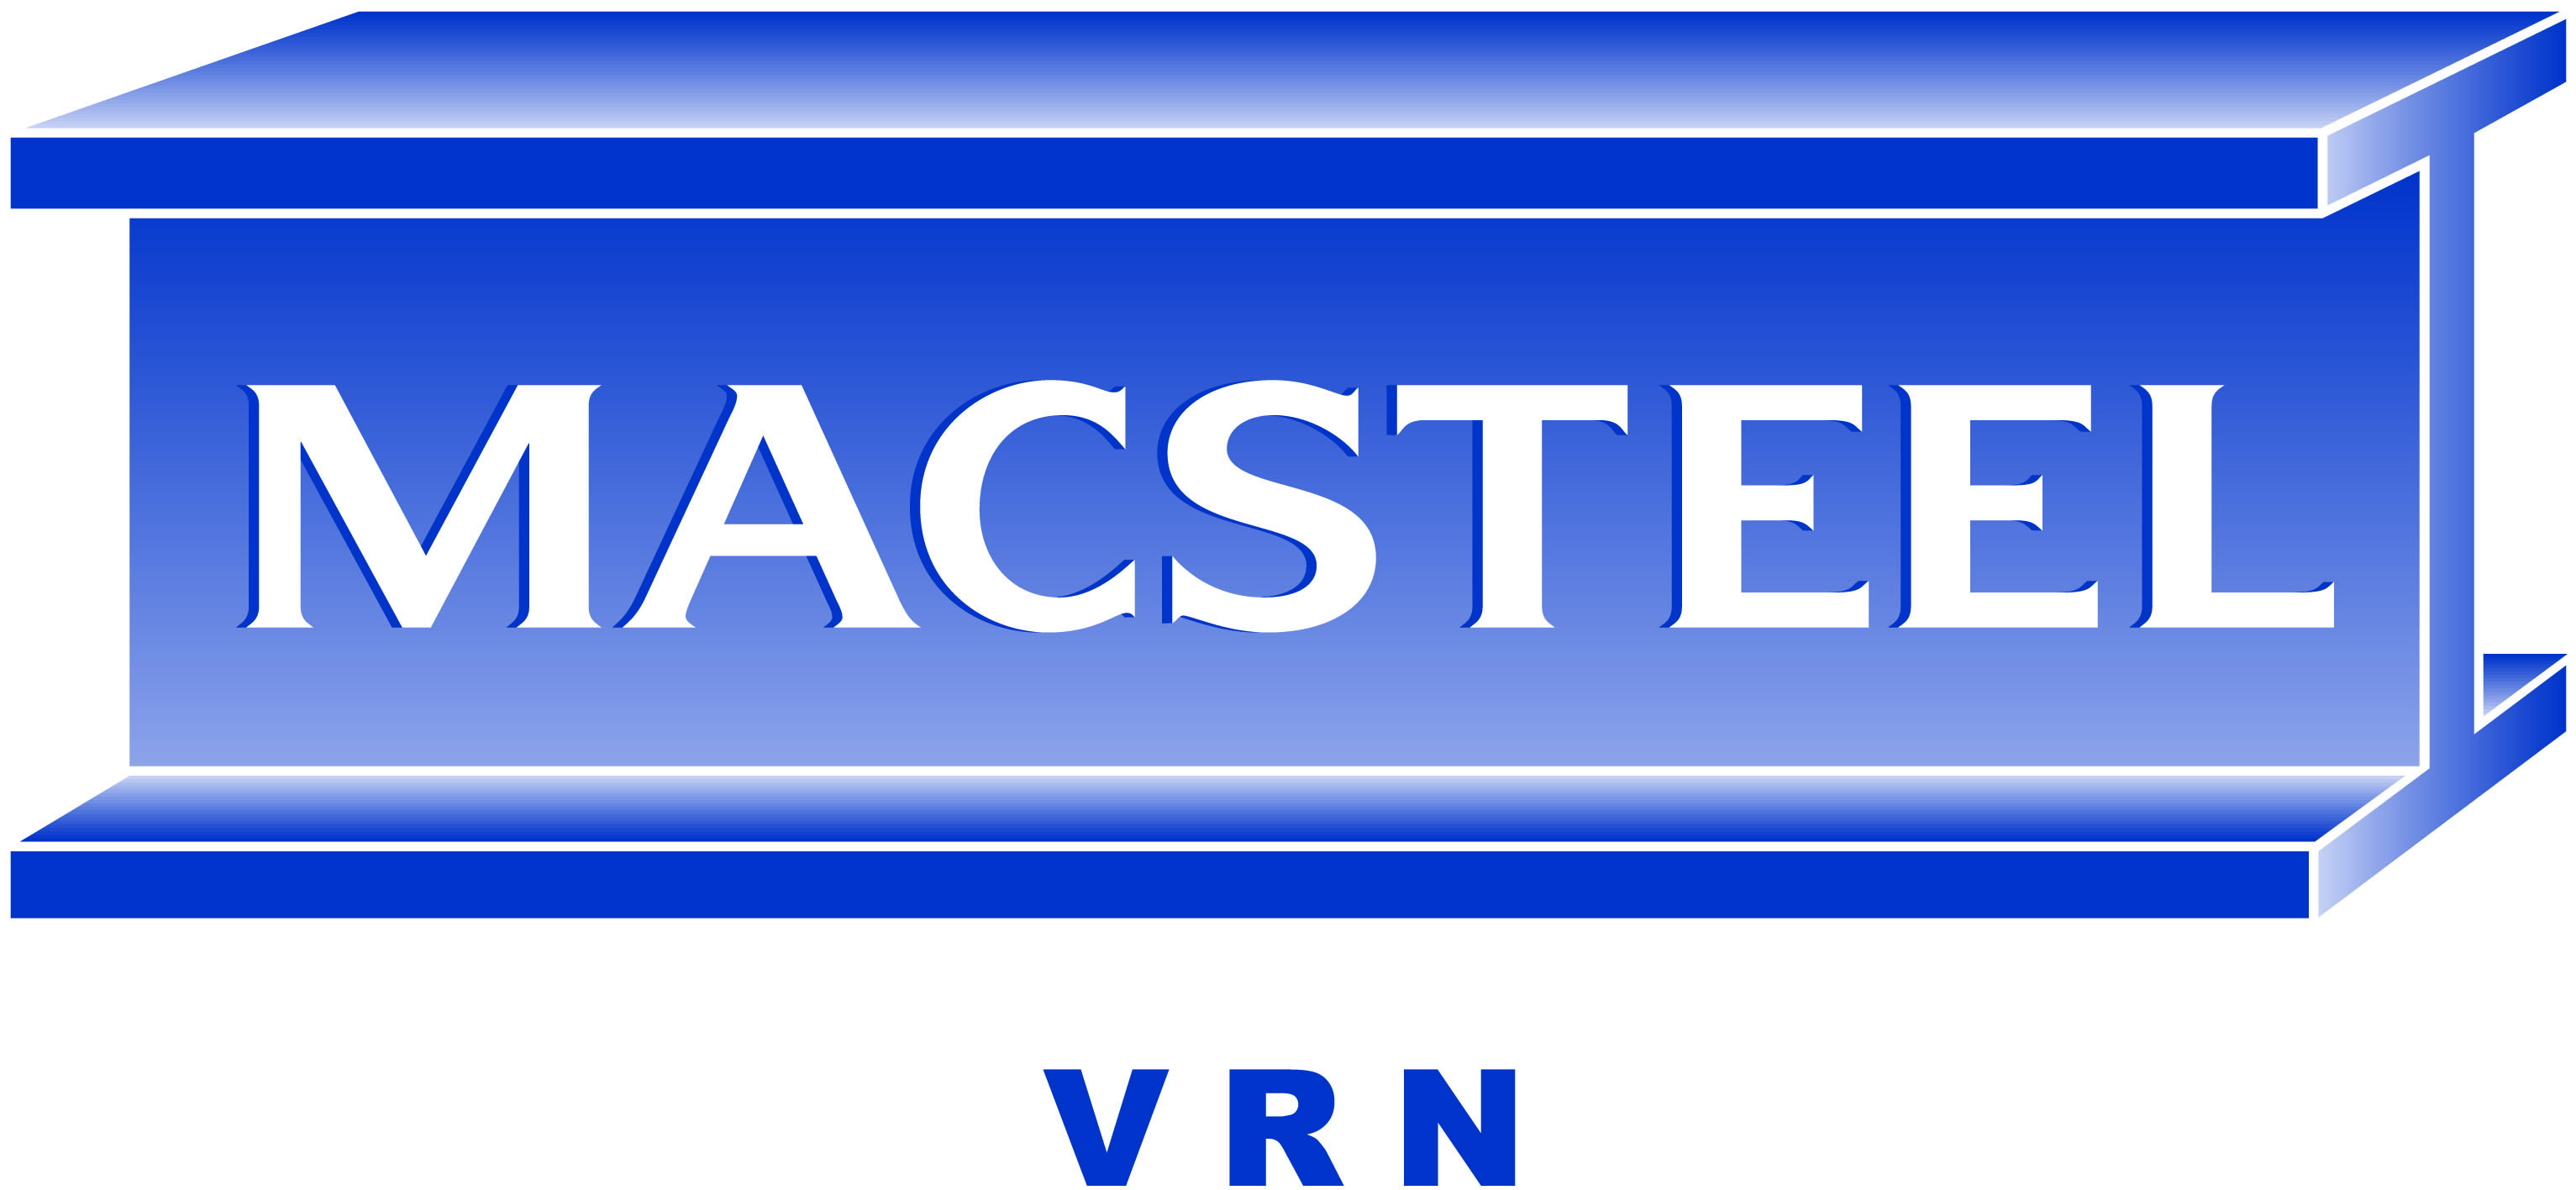 Macsteel VRN – Steelpoort logo